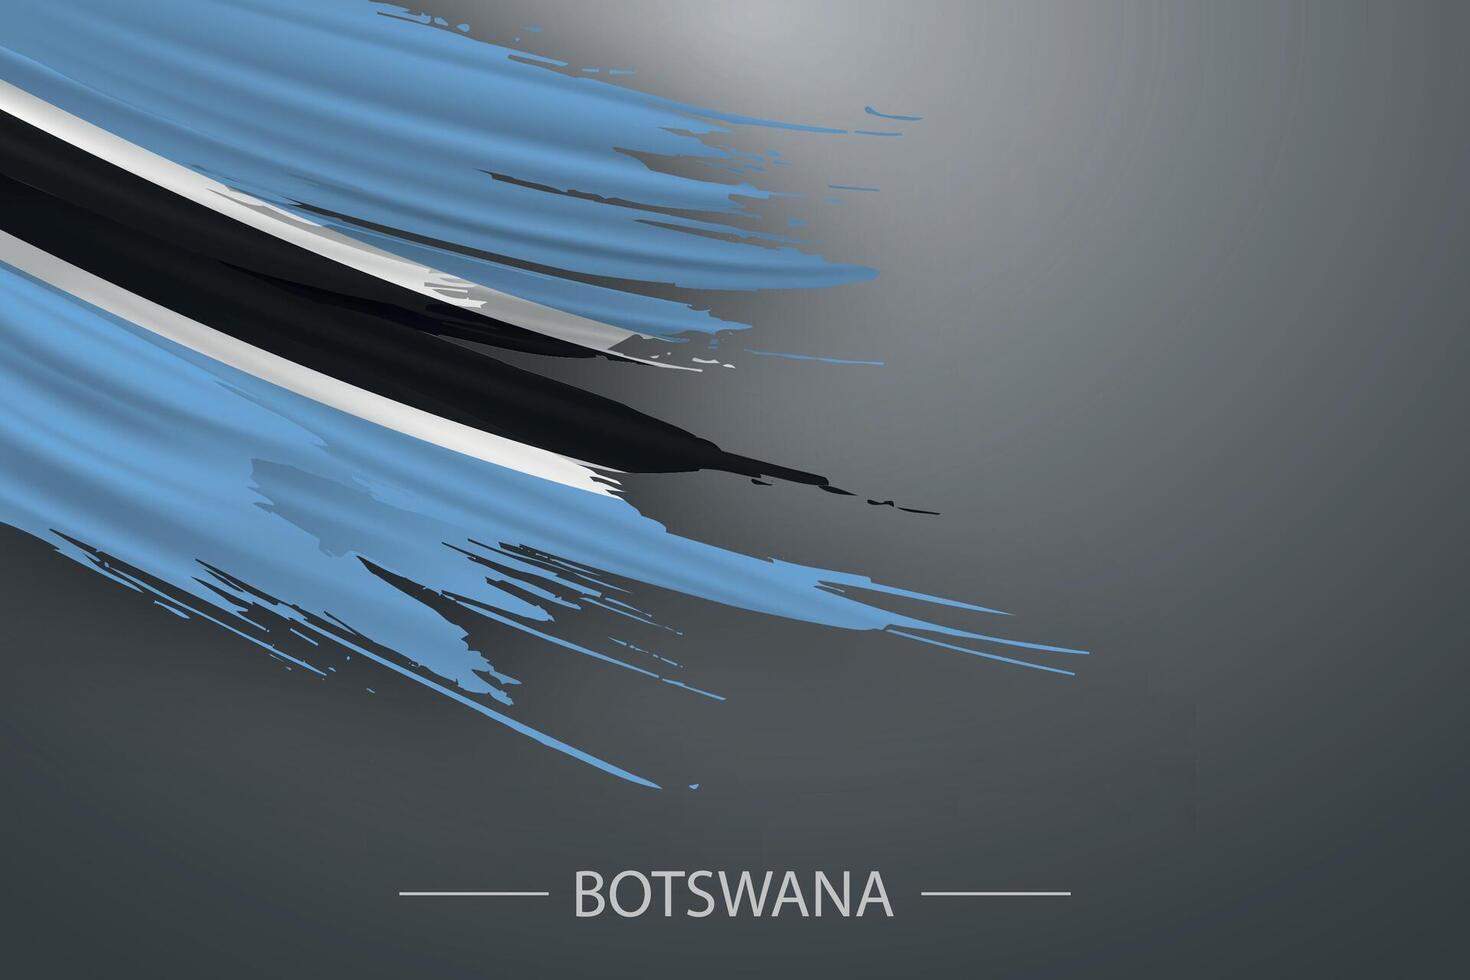 3d grunge brush stroke flag of Botswana vector